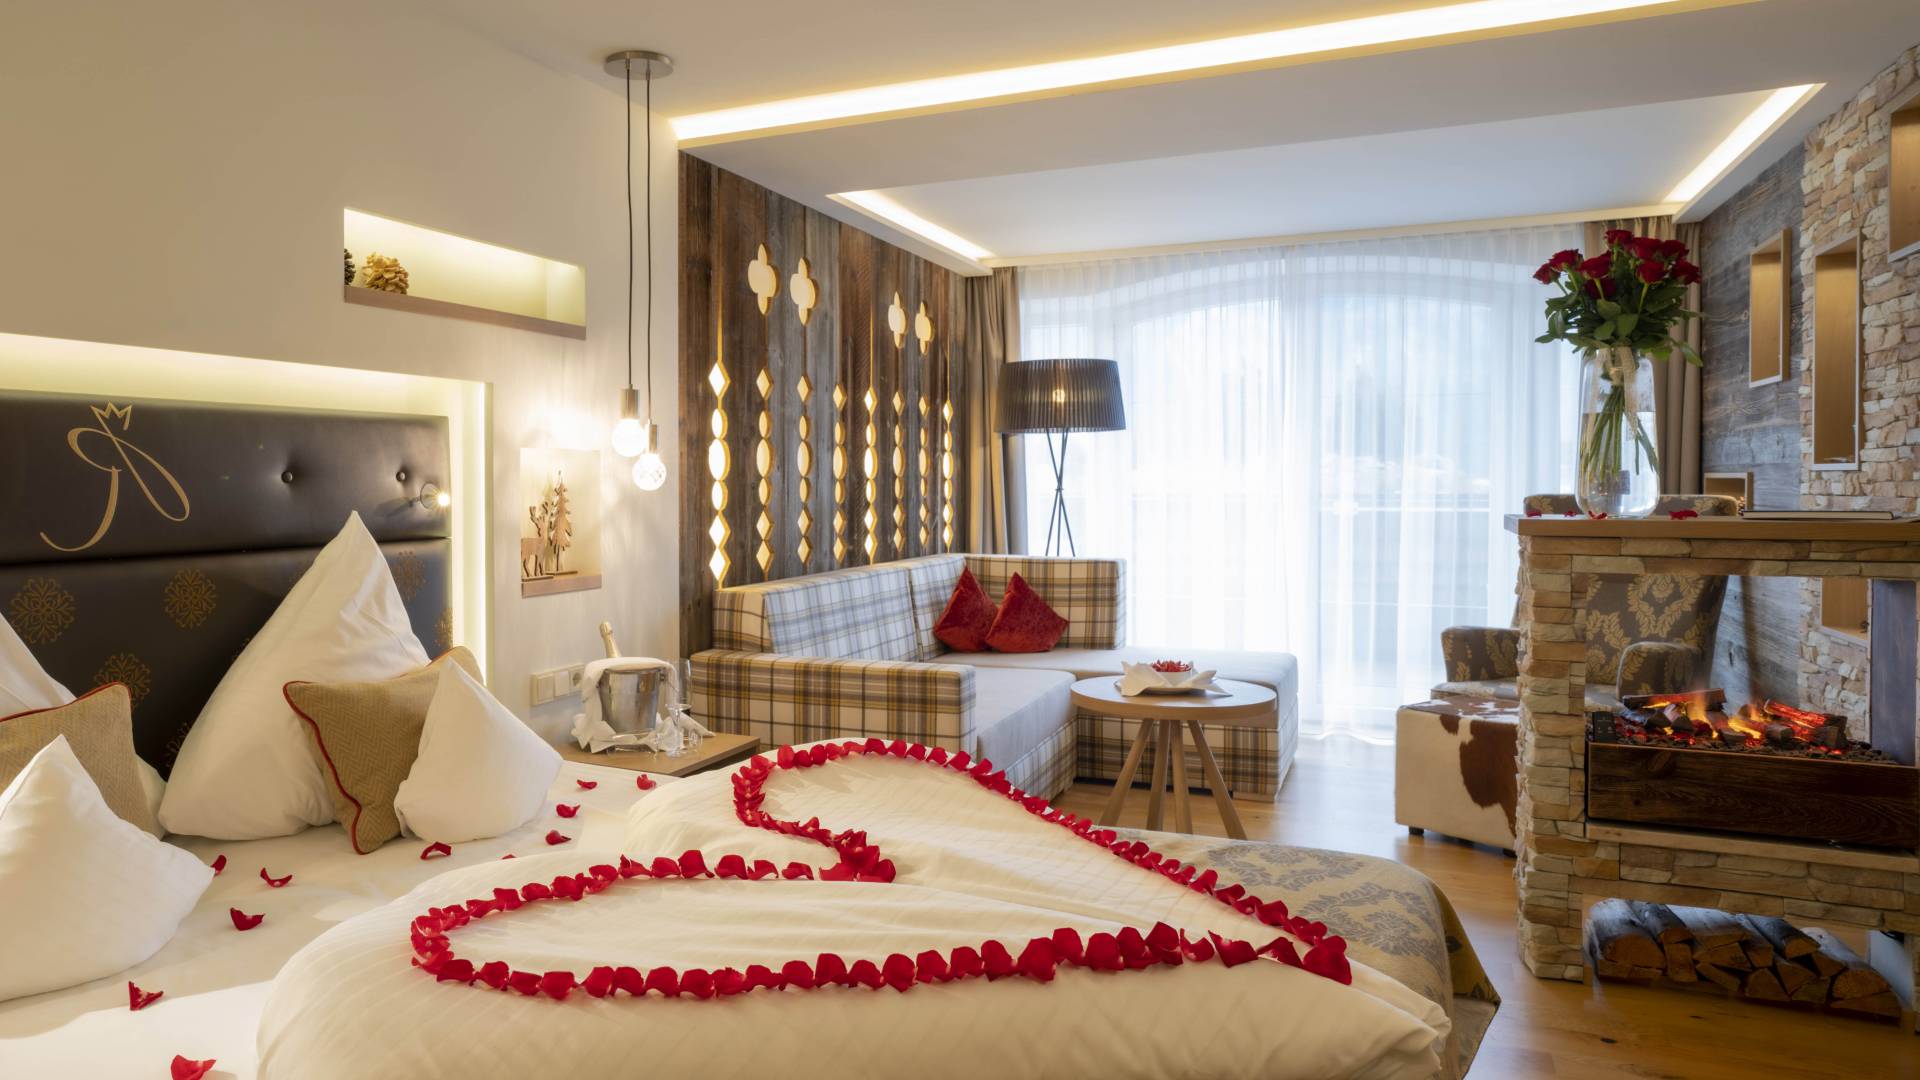 Hotelzimmer dekoriert mit Rosenblätter in Herzform